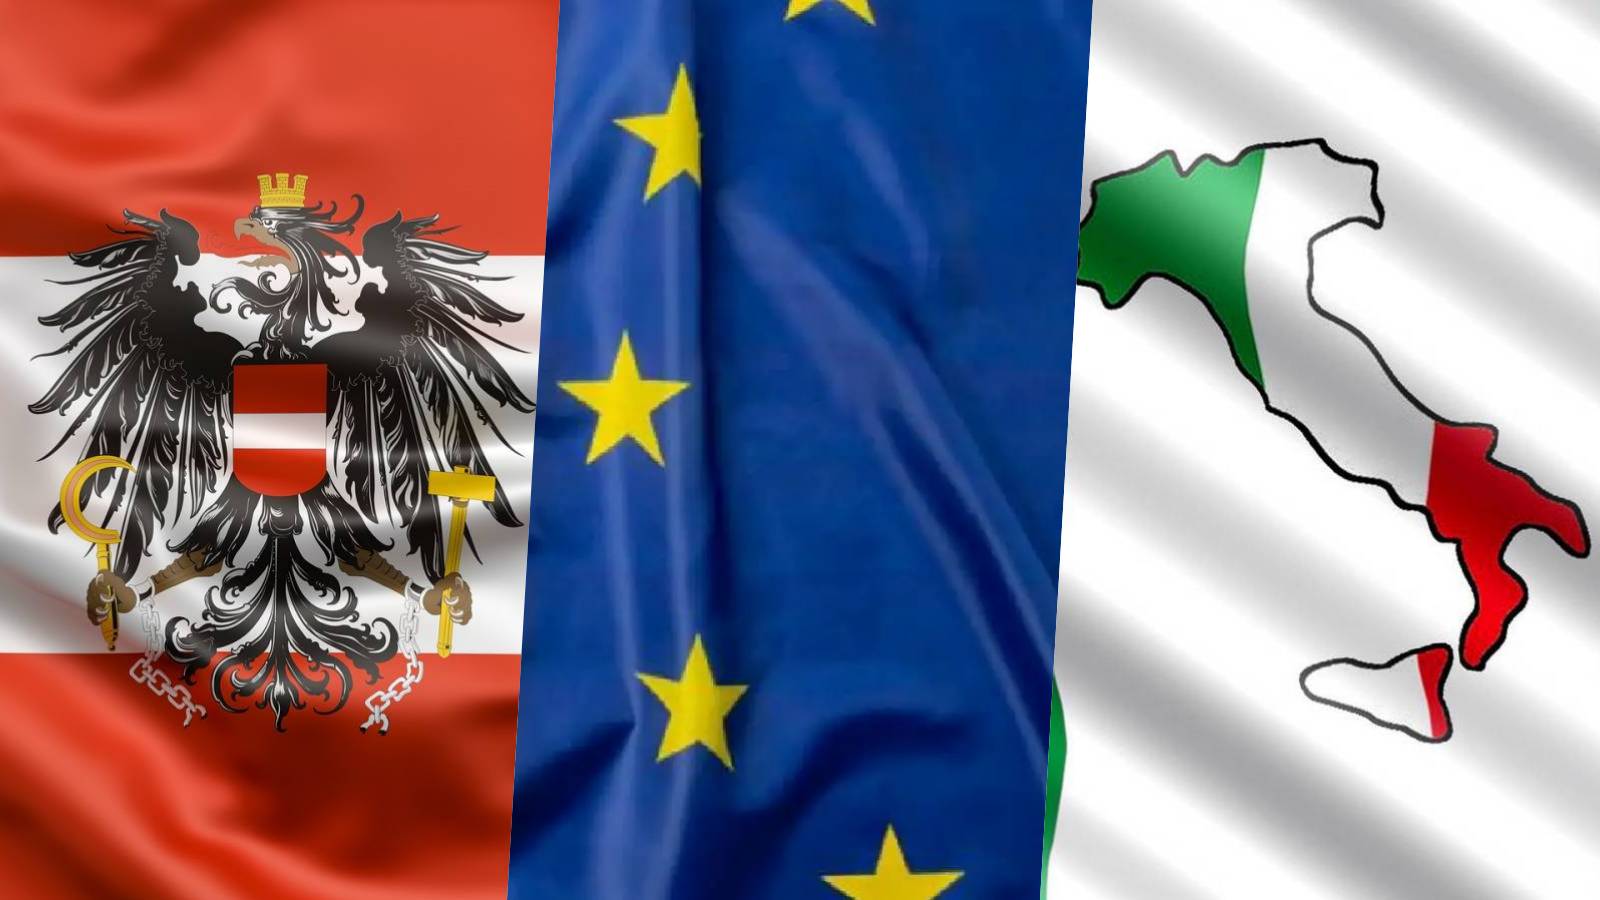 Austria Anuntul ULTIMA ORA UE Masurile URGENTE Italiei Schengen